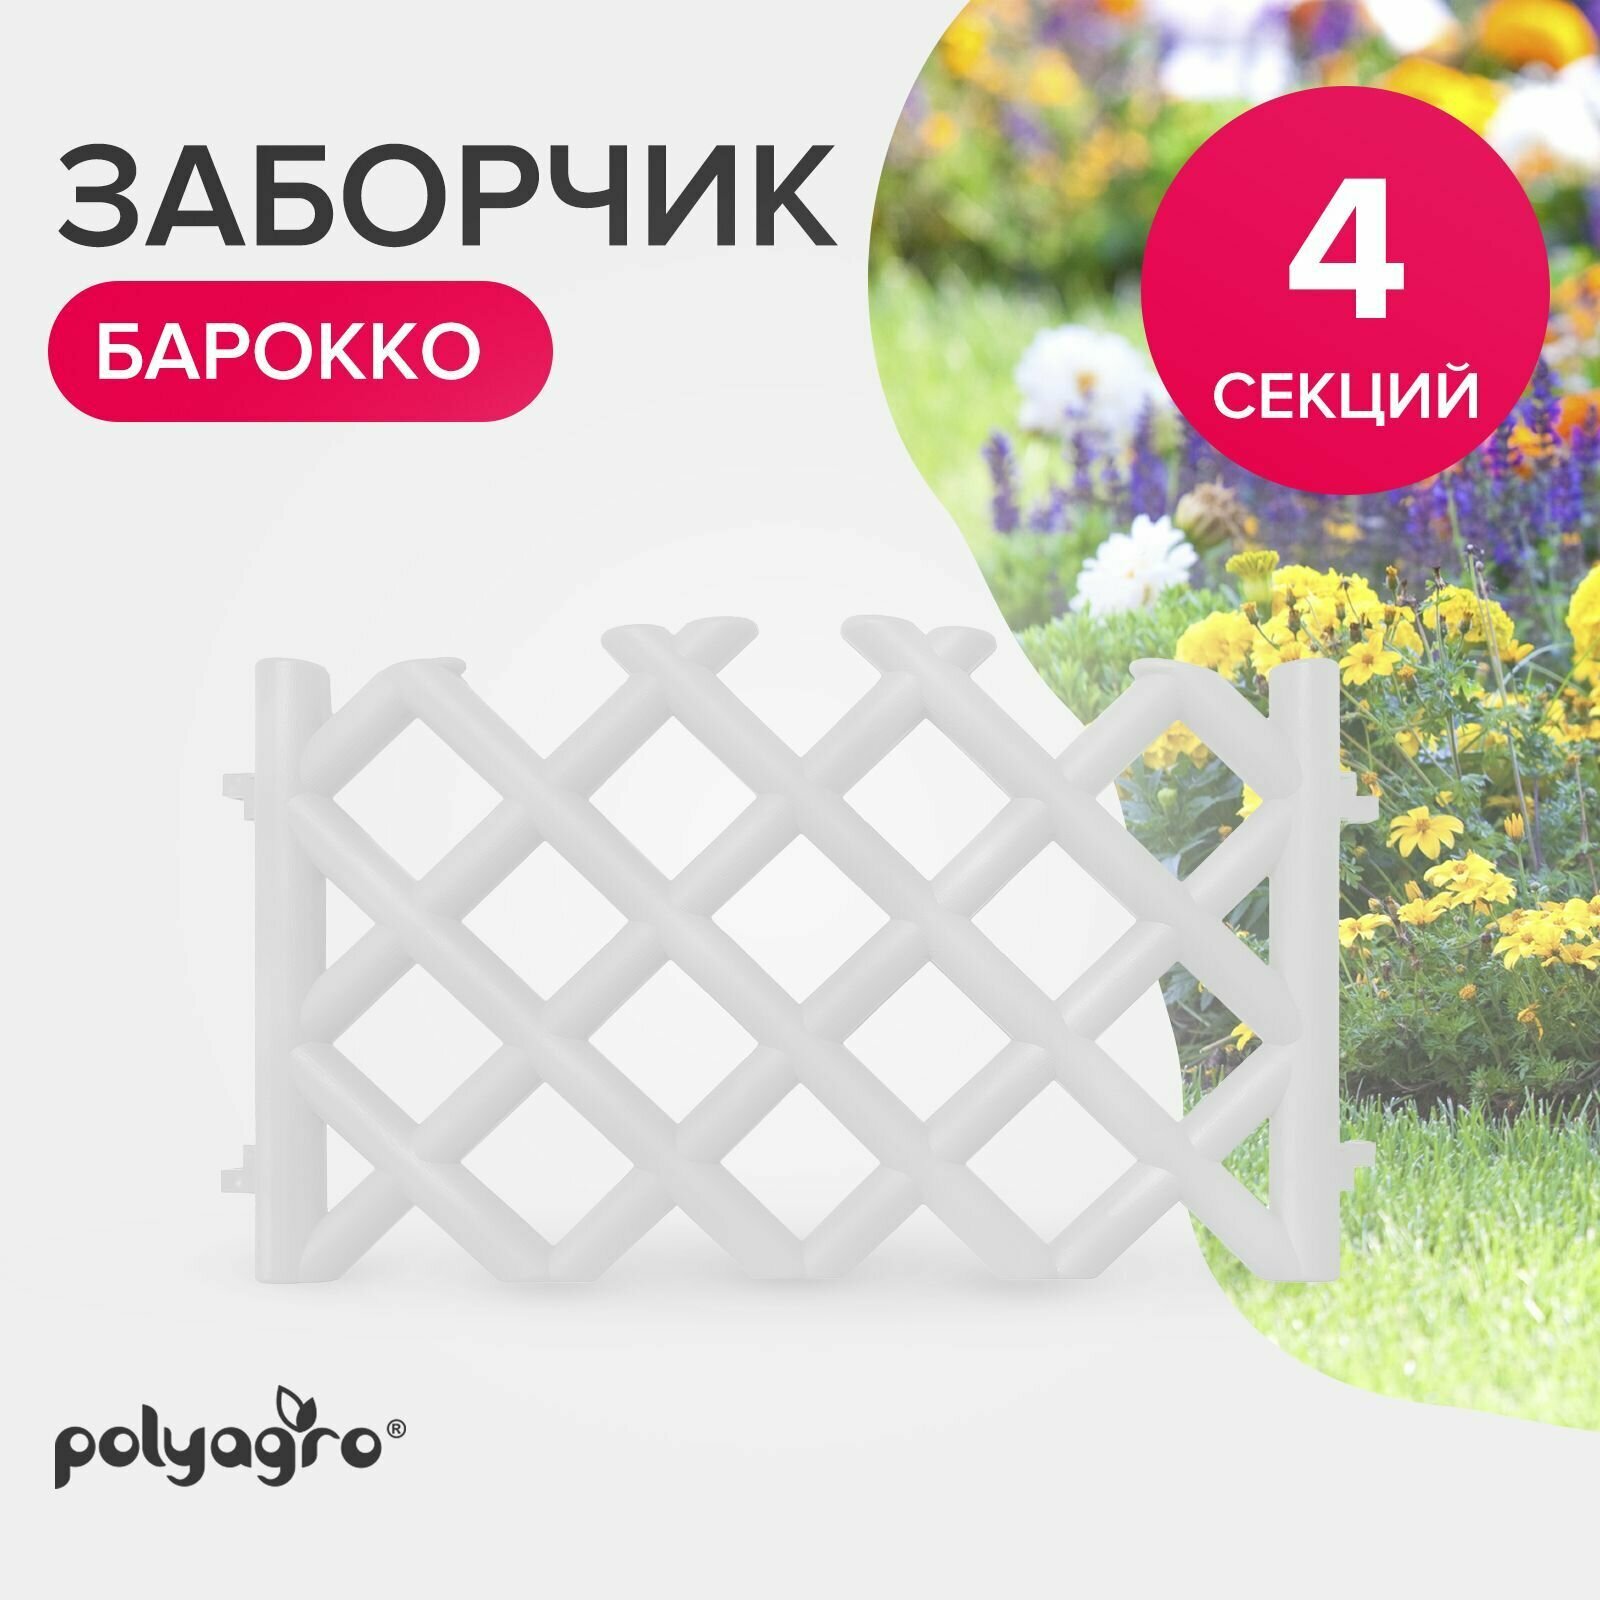 Заборчик декоративный для сада 278 м (высота 41 см) бордюр садовый Polyagro Барокко белый